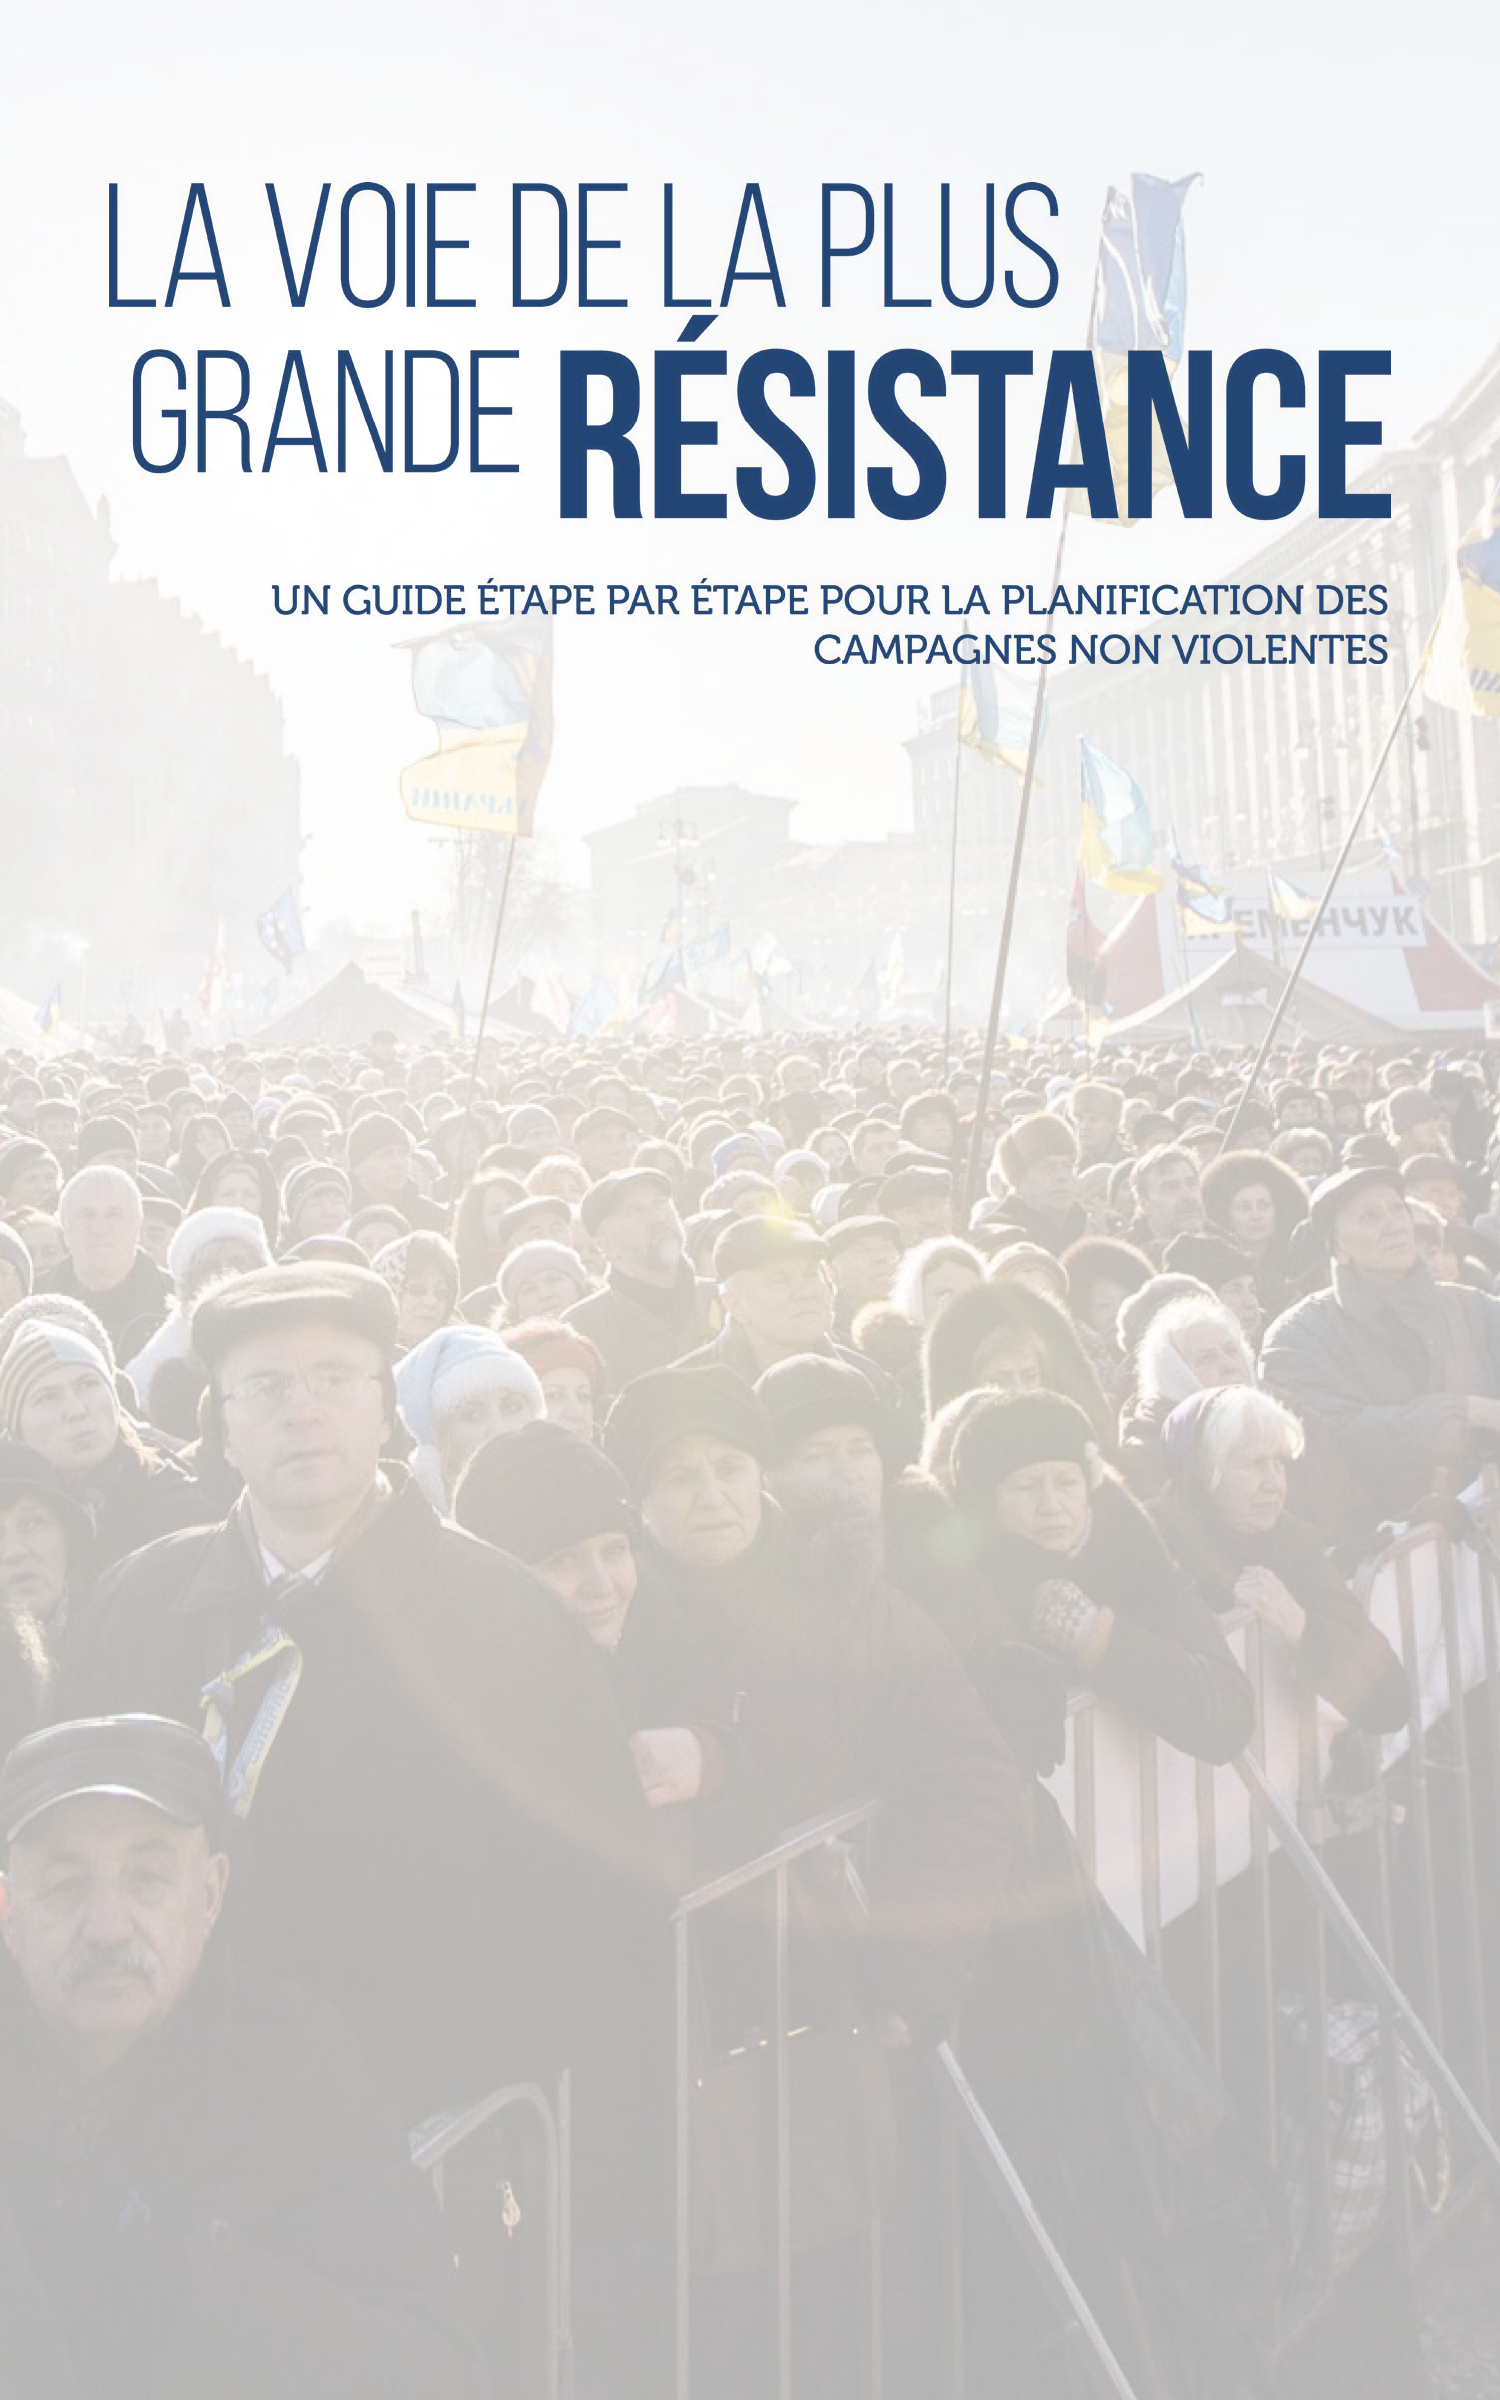 La voie de la plus grande résistance: Un guide étape par étape pour la planification des campagnes non violentes